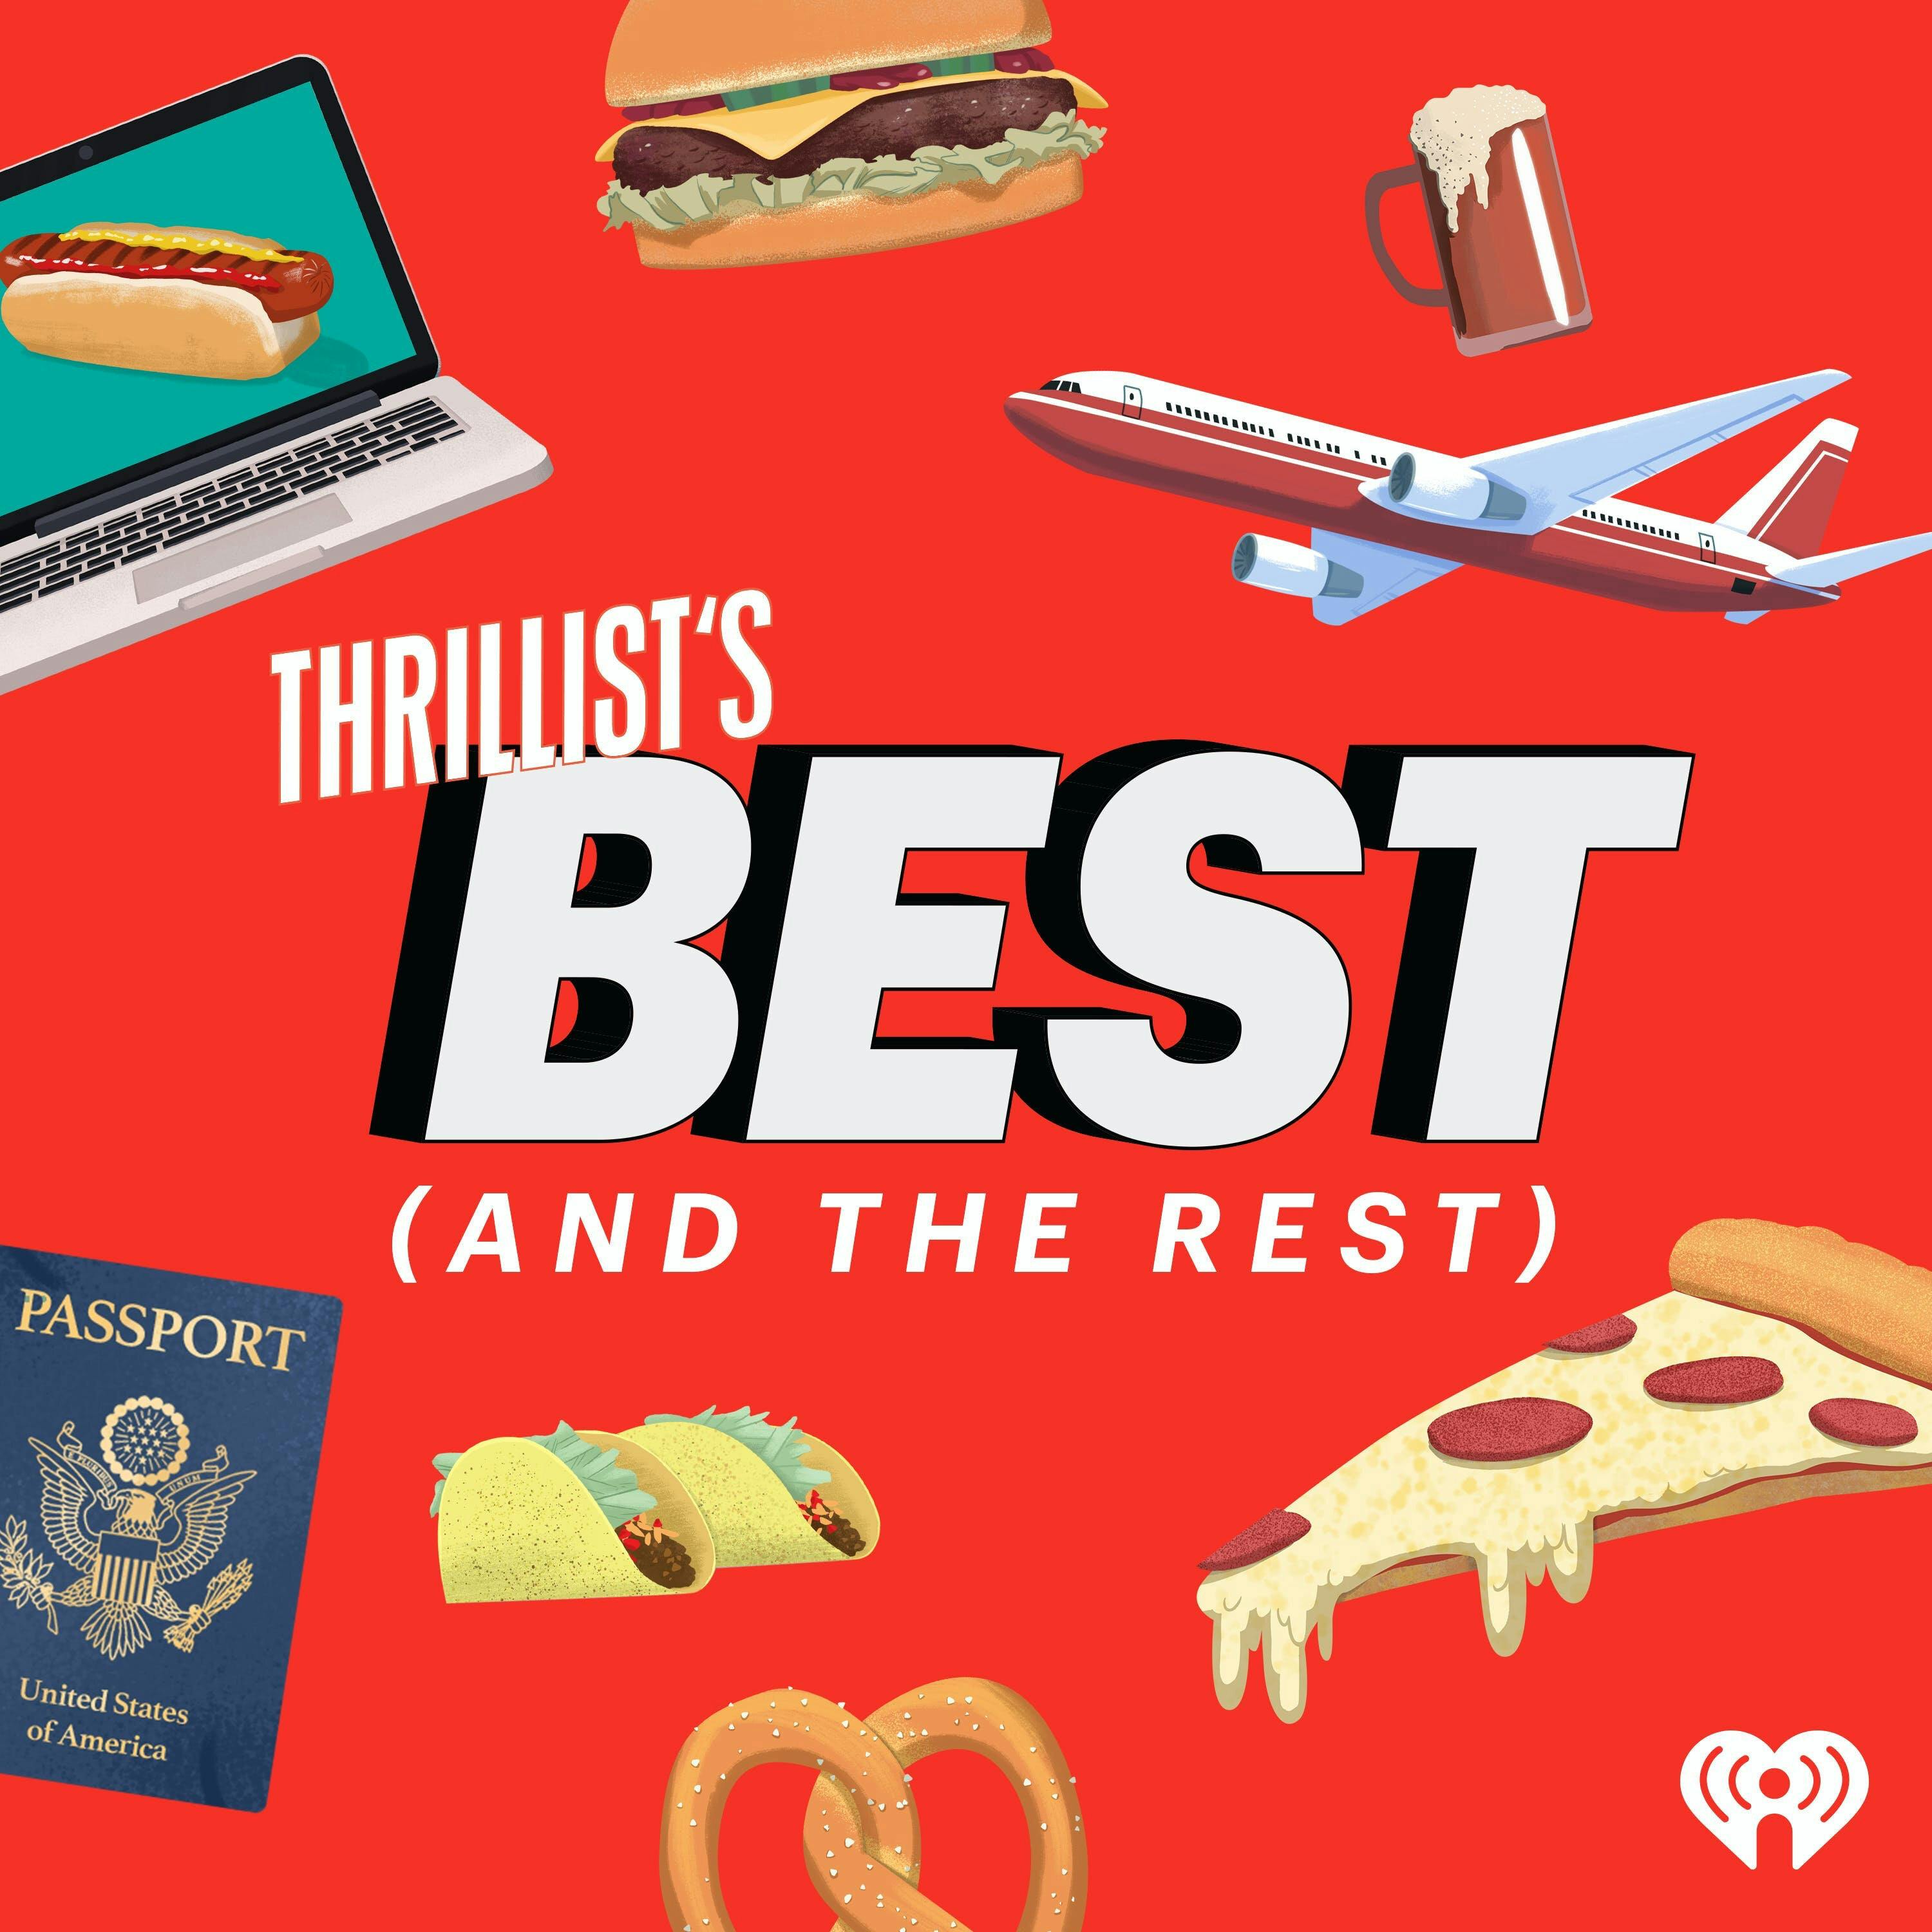 THRILLIST’S BEST: The Best Hidden Gems on Netflix